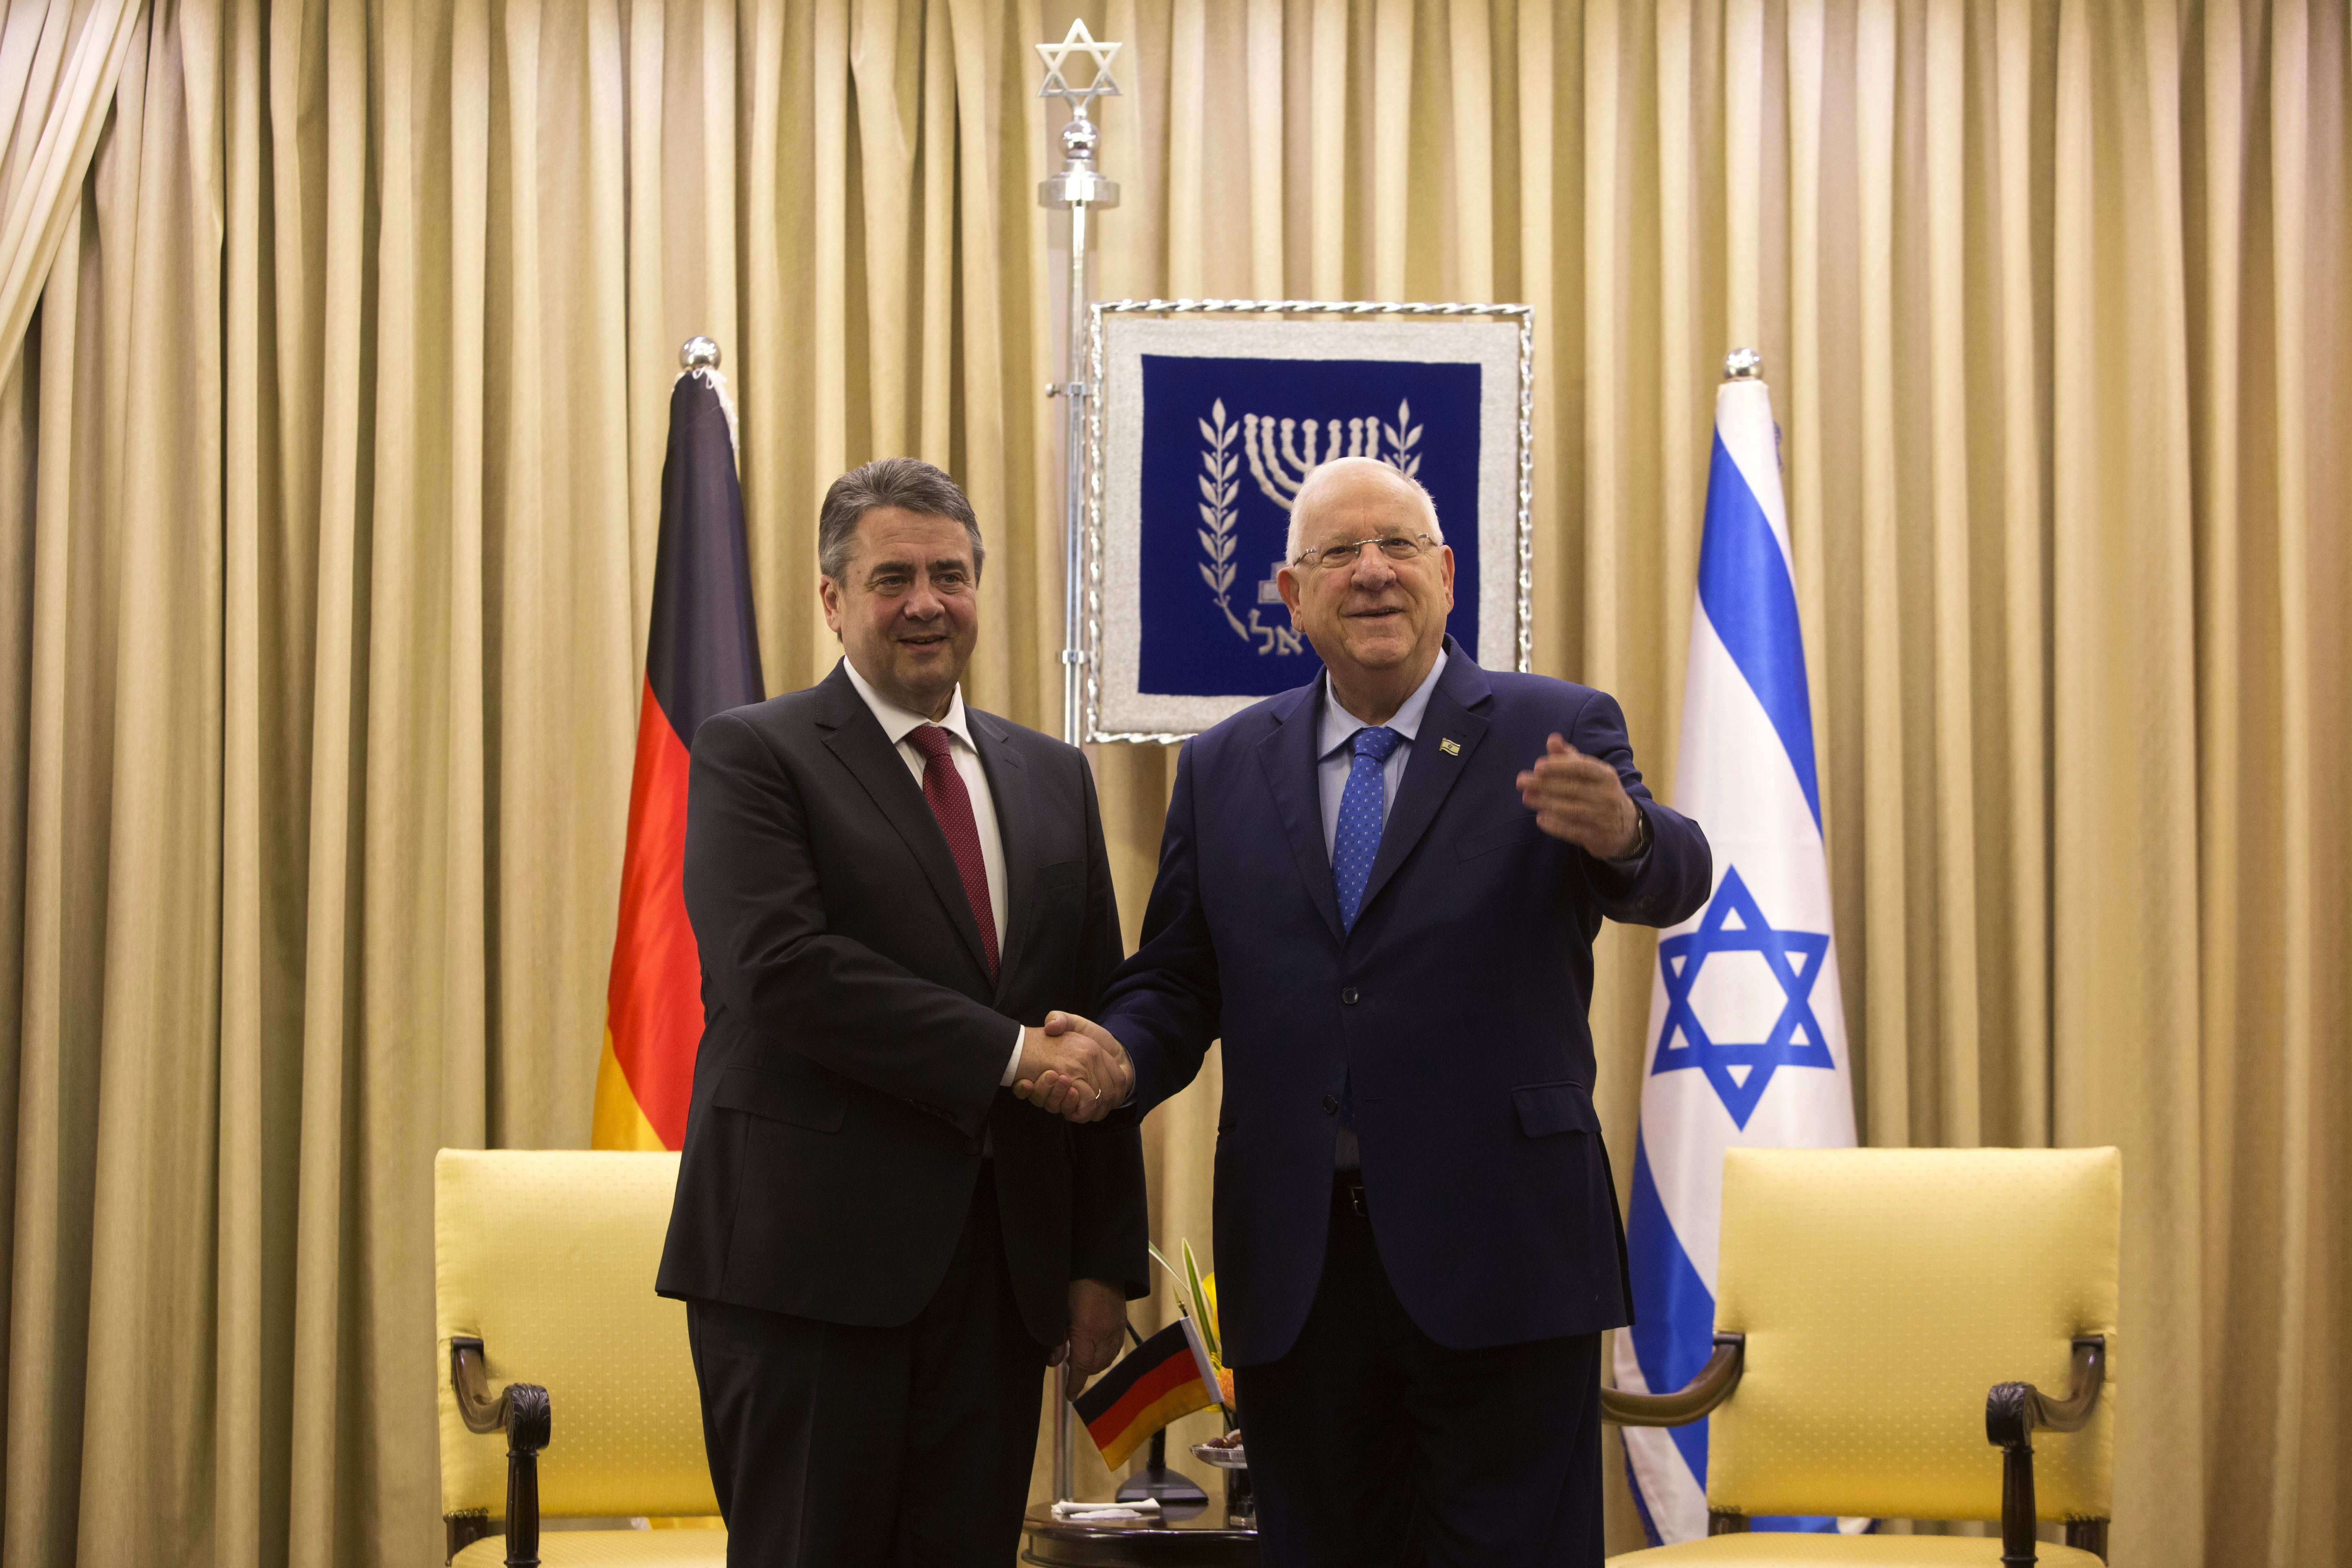 Външният министър на Германия Габриел /вляво/ бе приет от президента на Израел Ривлин в Йерусалим, въпреки отказа на Нетаняху